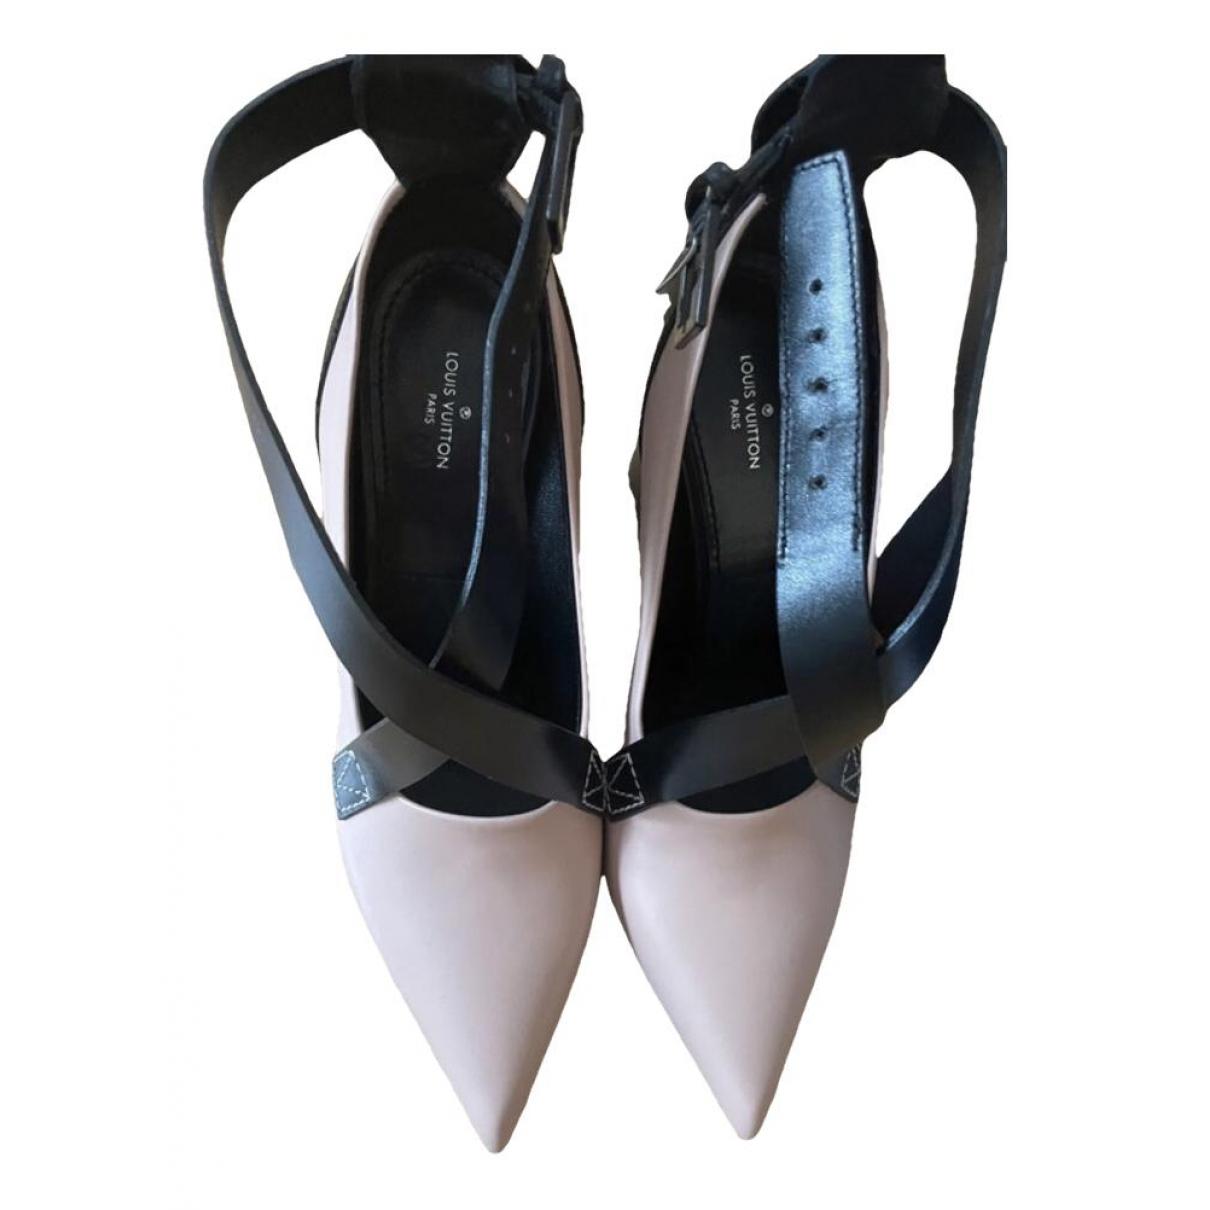 Louis Vuitton Rare 1854 Podium Platform Pumps Sandals Heels Black Shoes